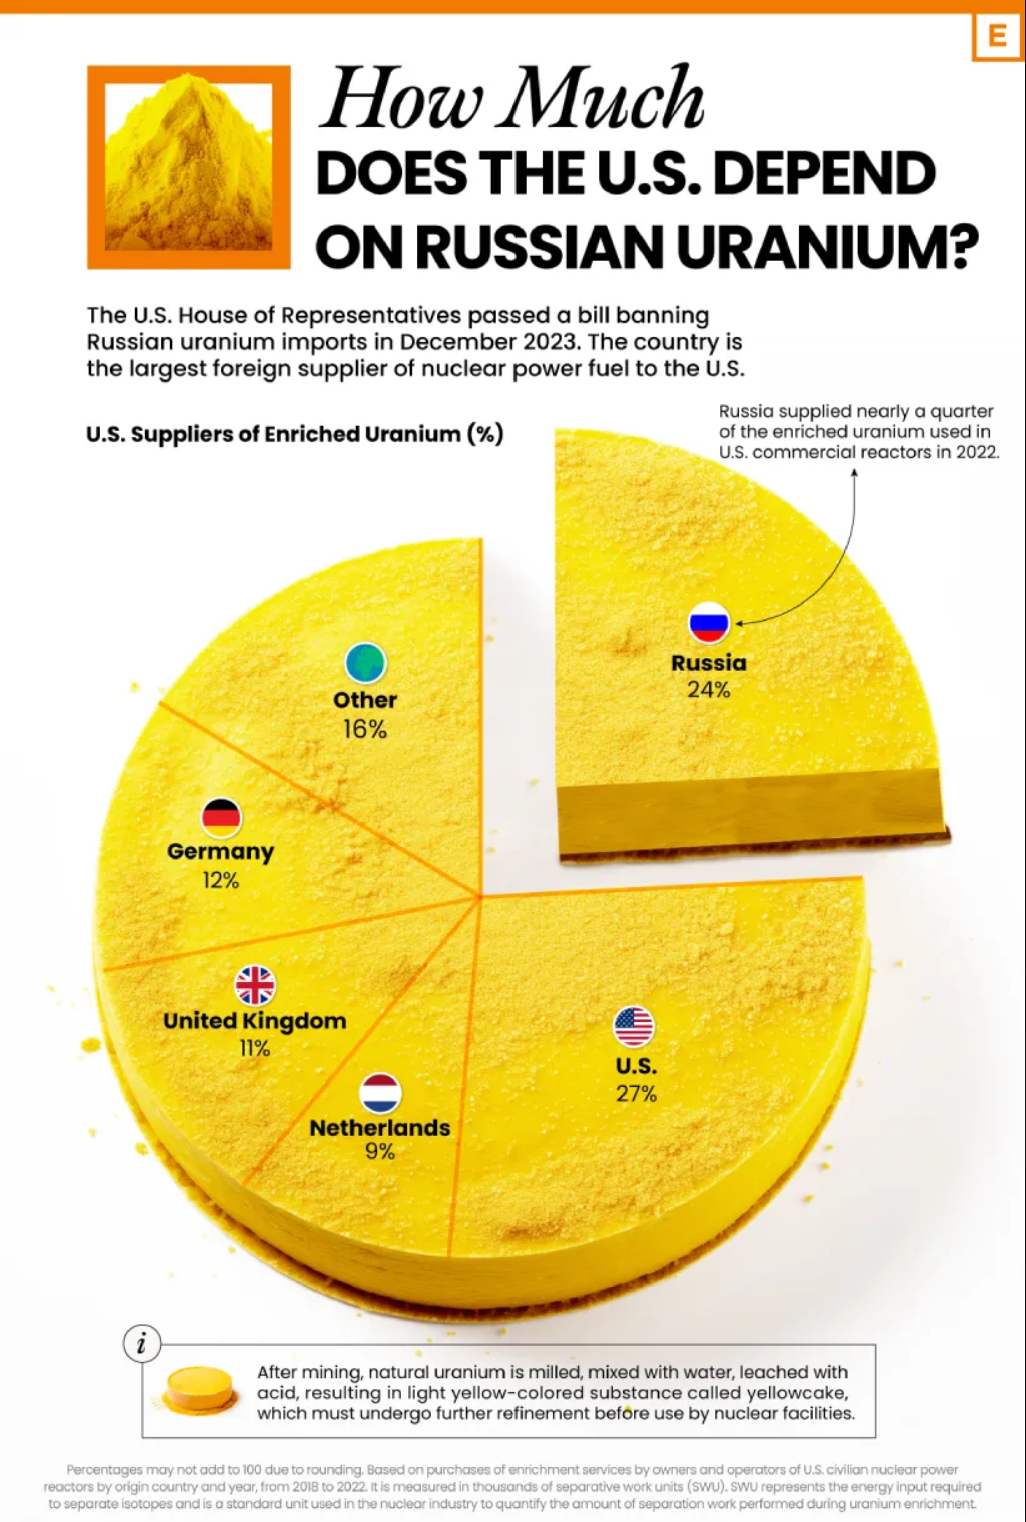 آمریکا چقدر به اورانیوم روسیه وابسته است؟